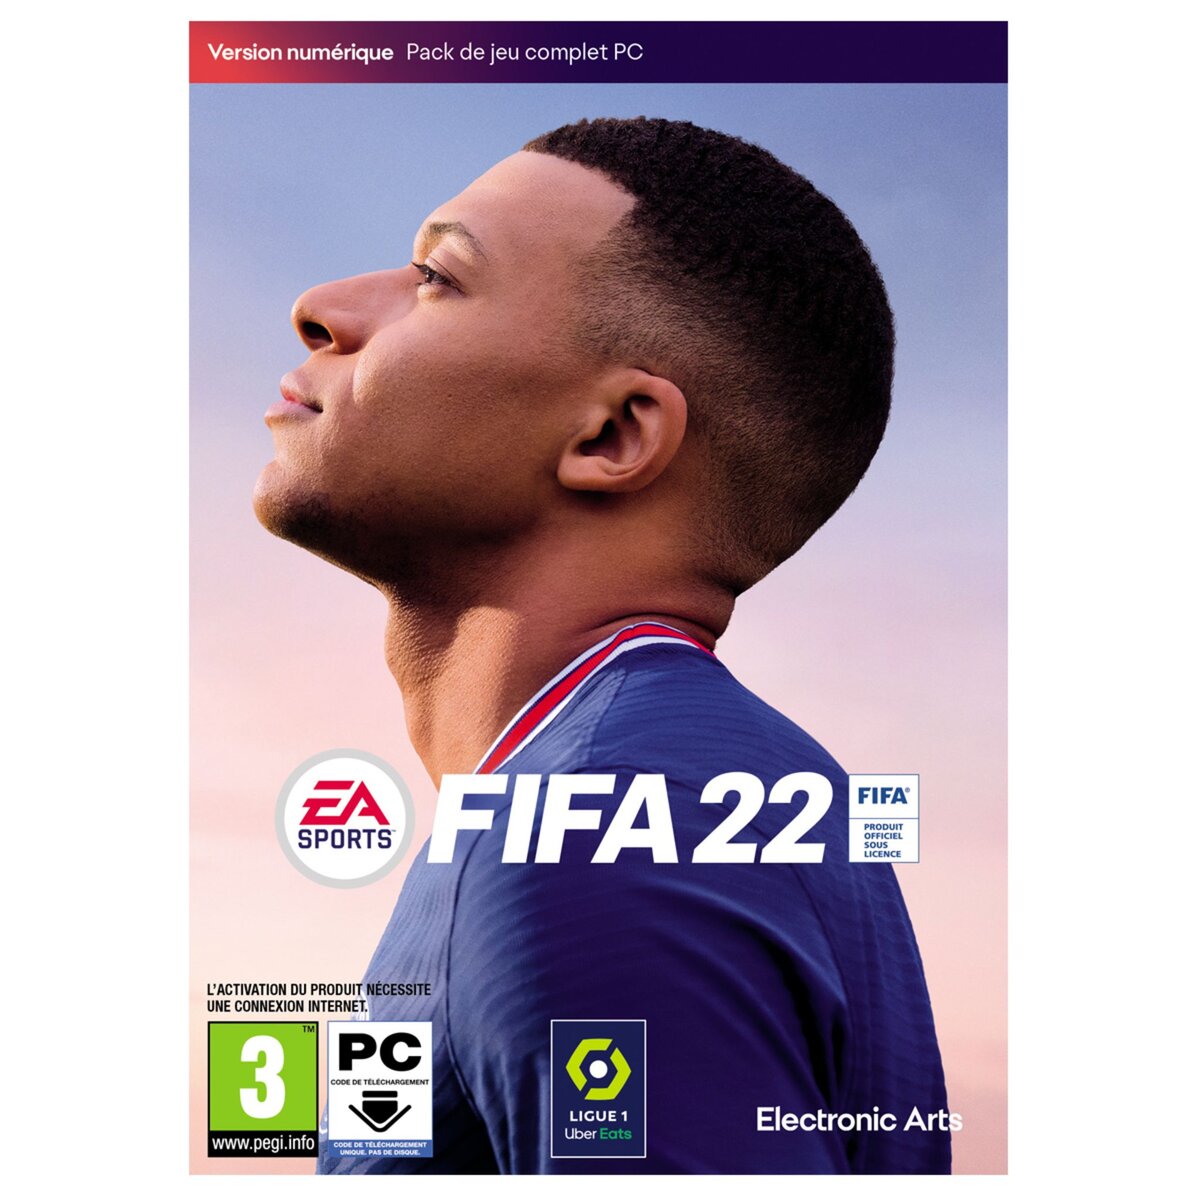 Electronic Arts Fifa 22 PC Code de téléchargement